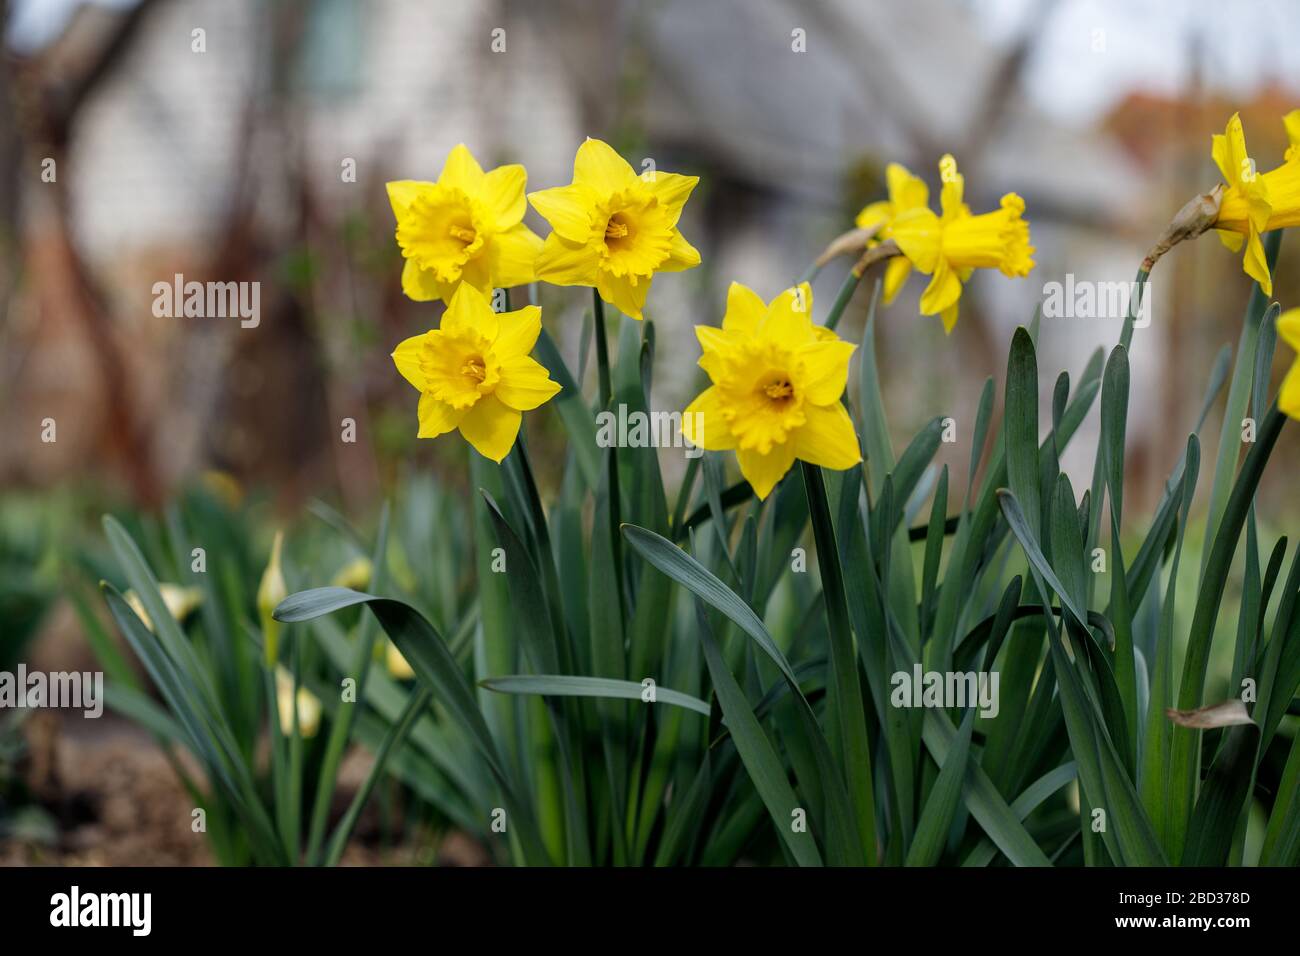 Narcisse jaune - jondil sur un fond vert. Fleur printanière jonquille  narcissus , gros plan dans le jardin Photo Stock - Alamy